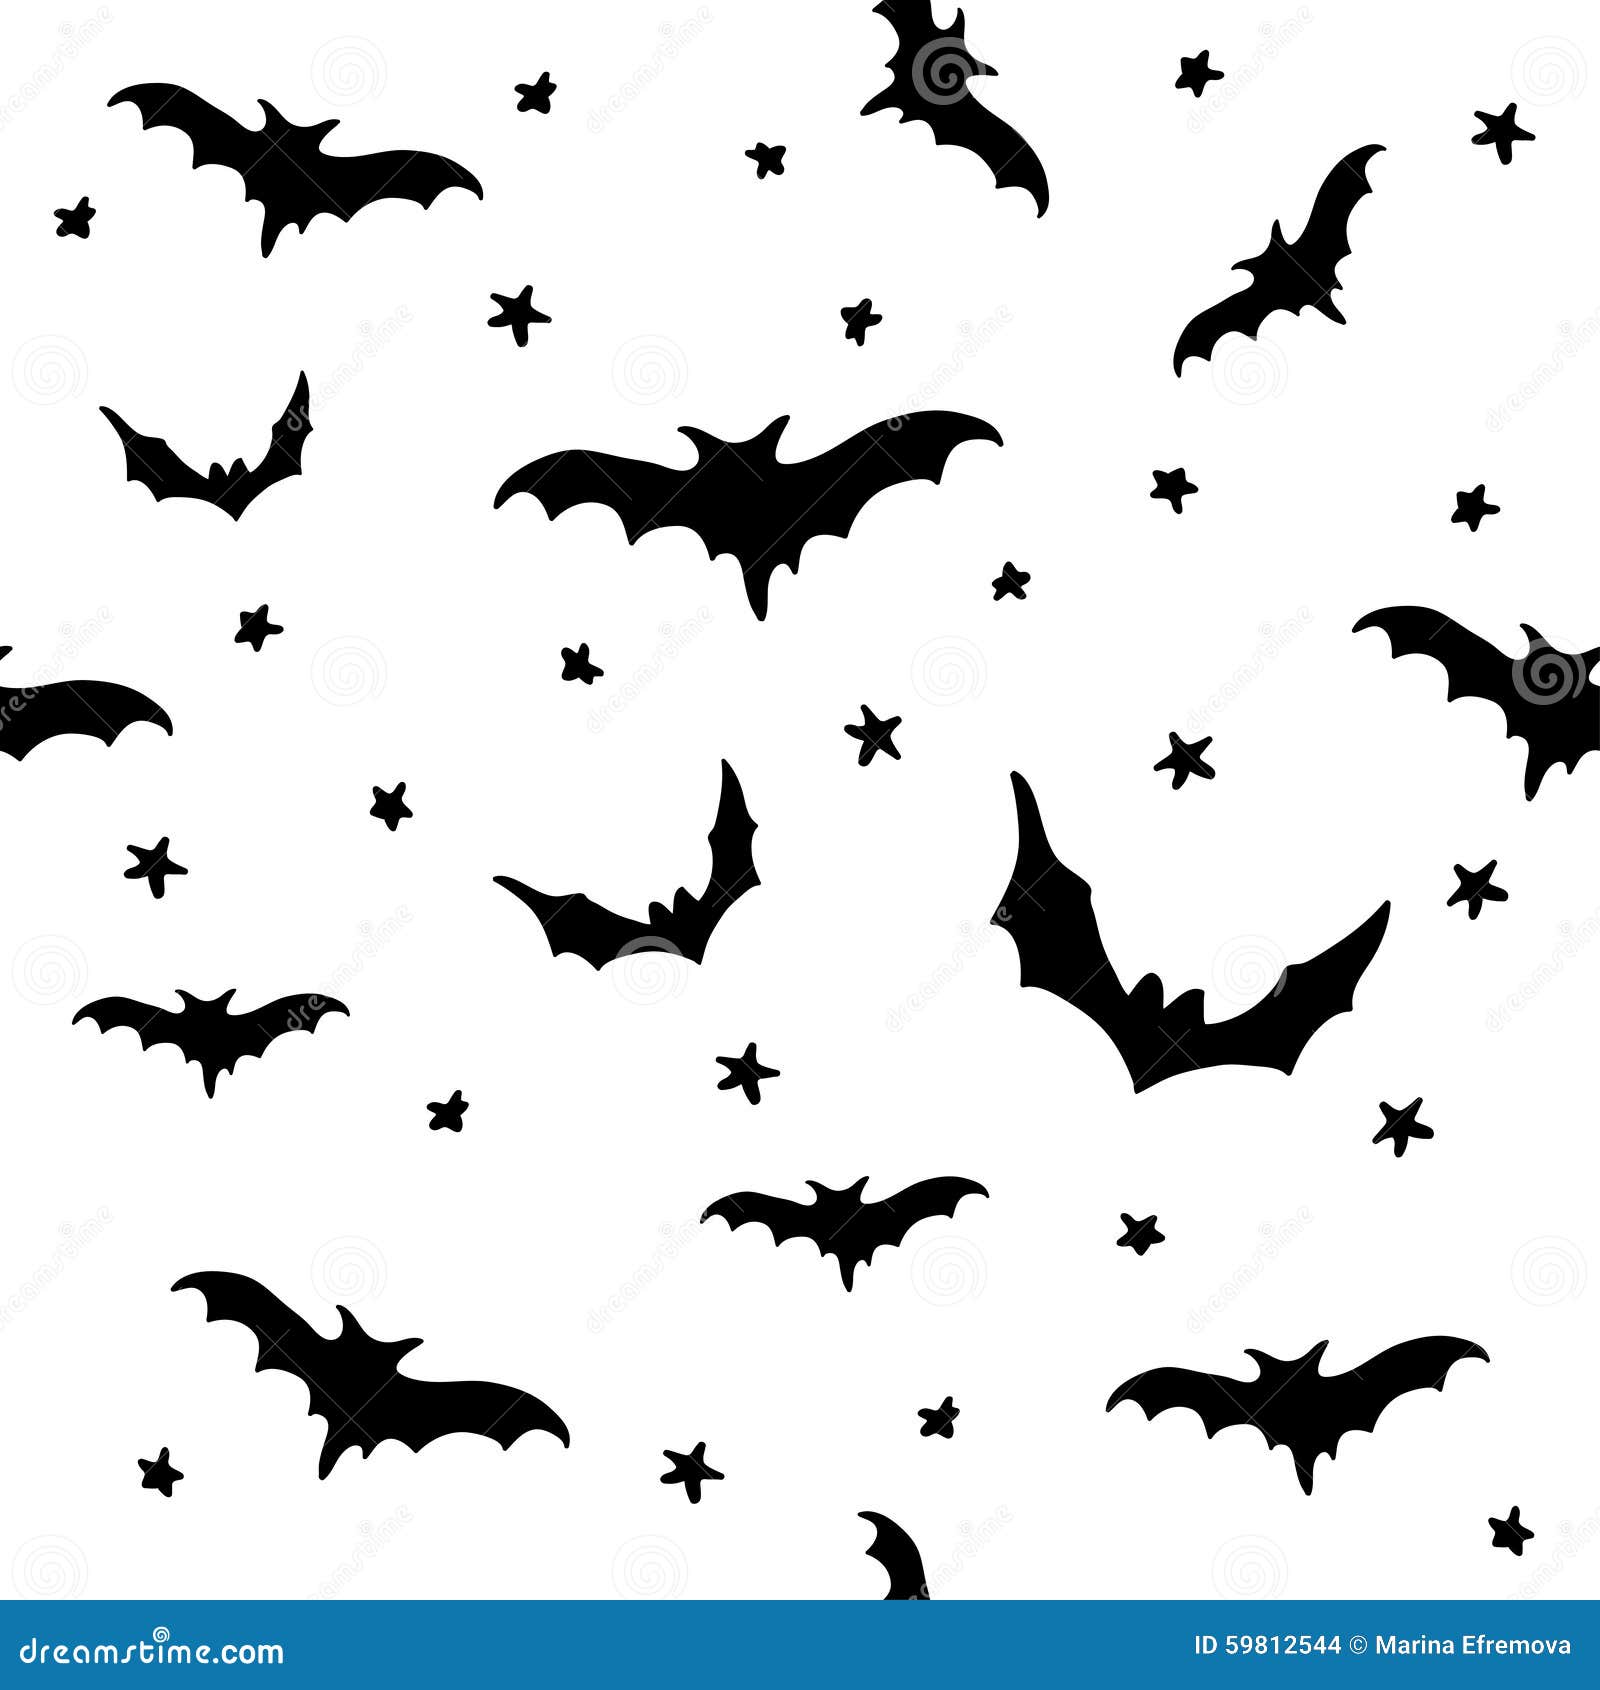 Batman And His Bat Friends 4K wallpaper download